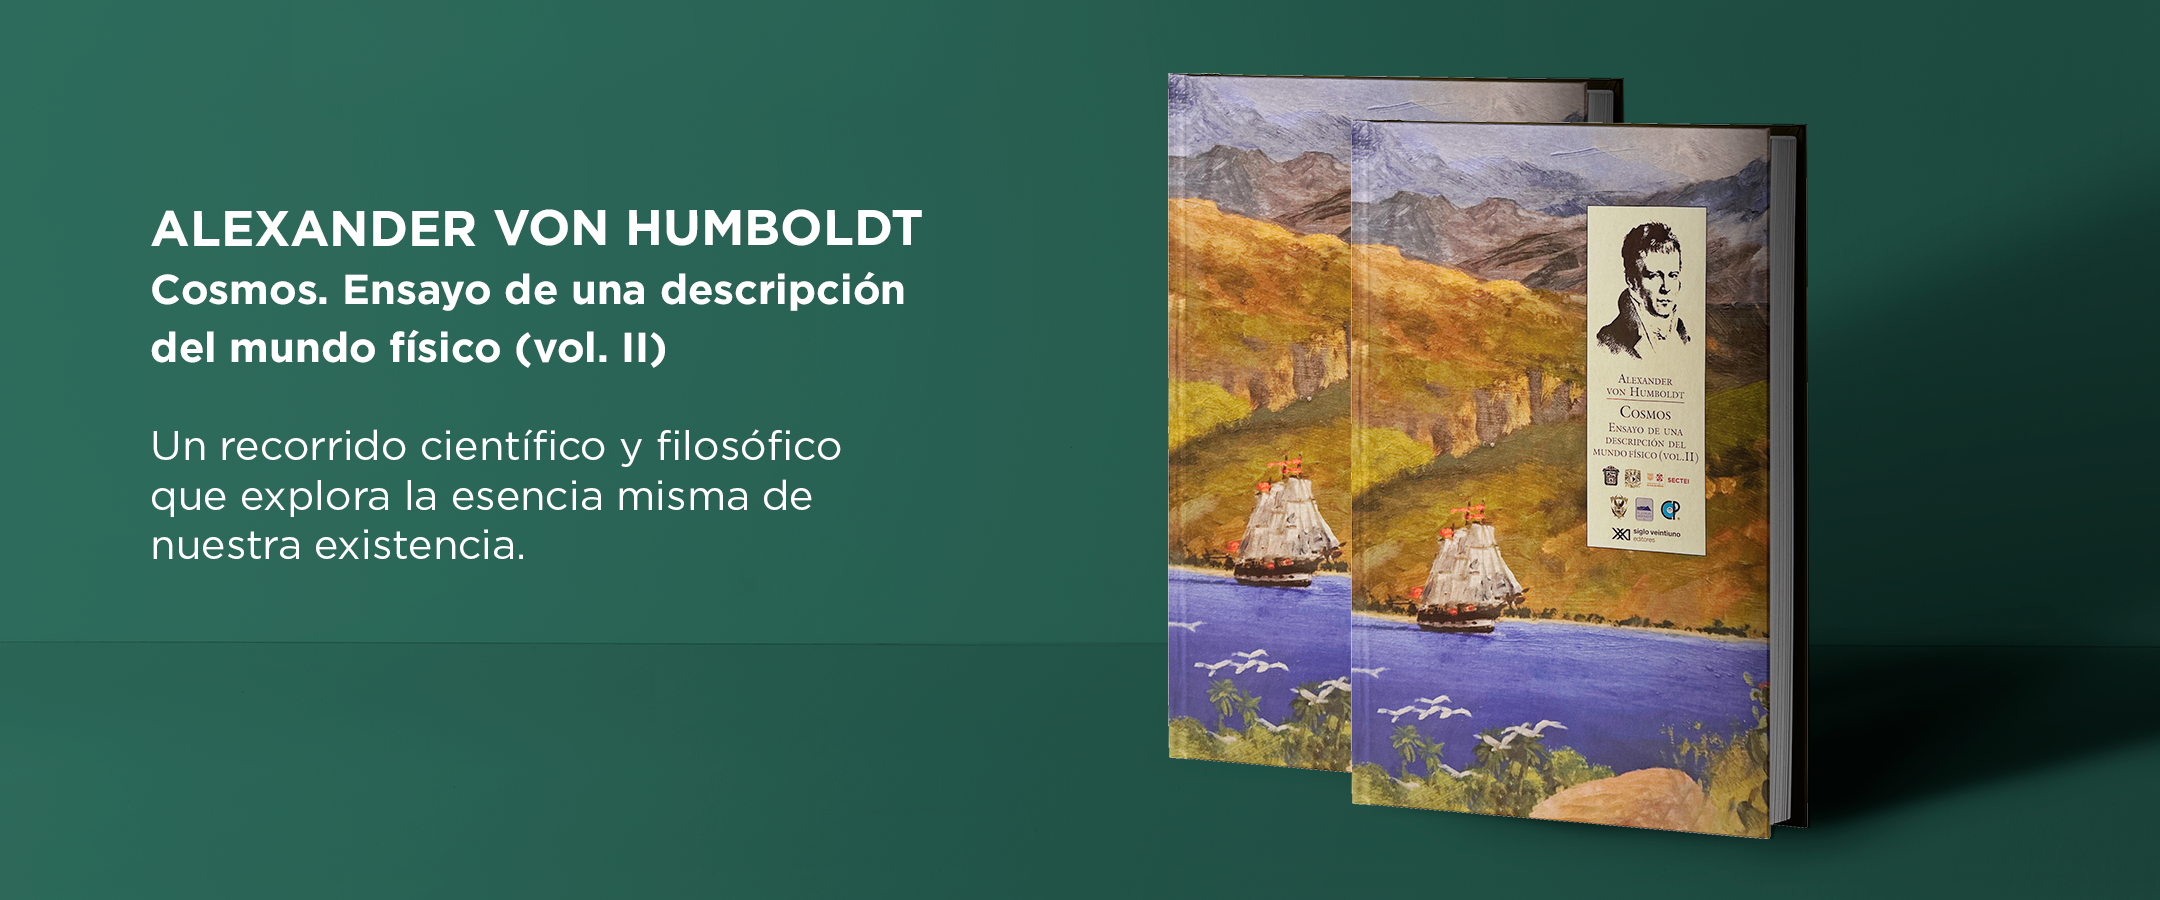 Alexander von Humboldt. Cosmos. Ensayo de una descripción del mundo físico